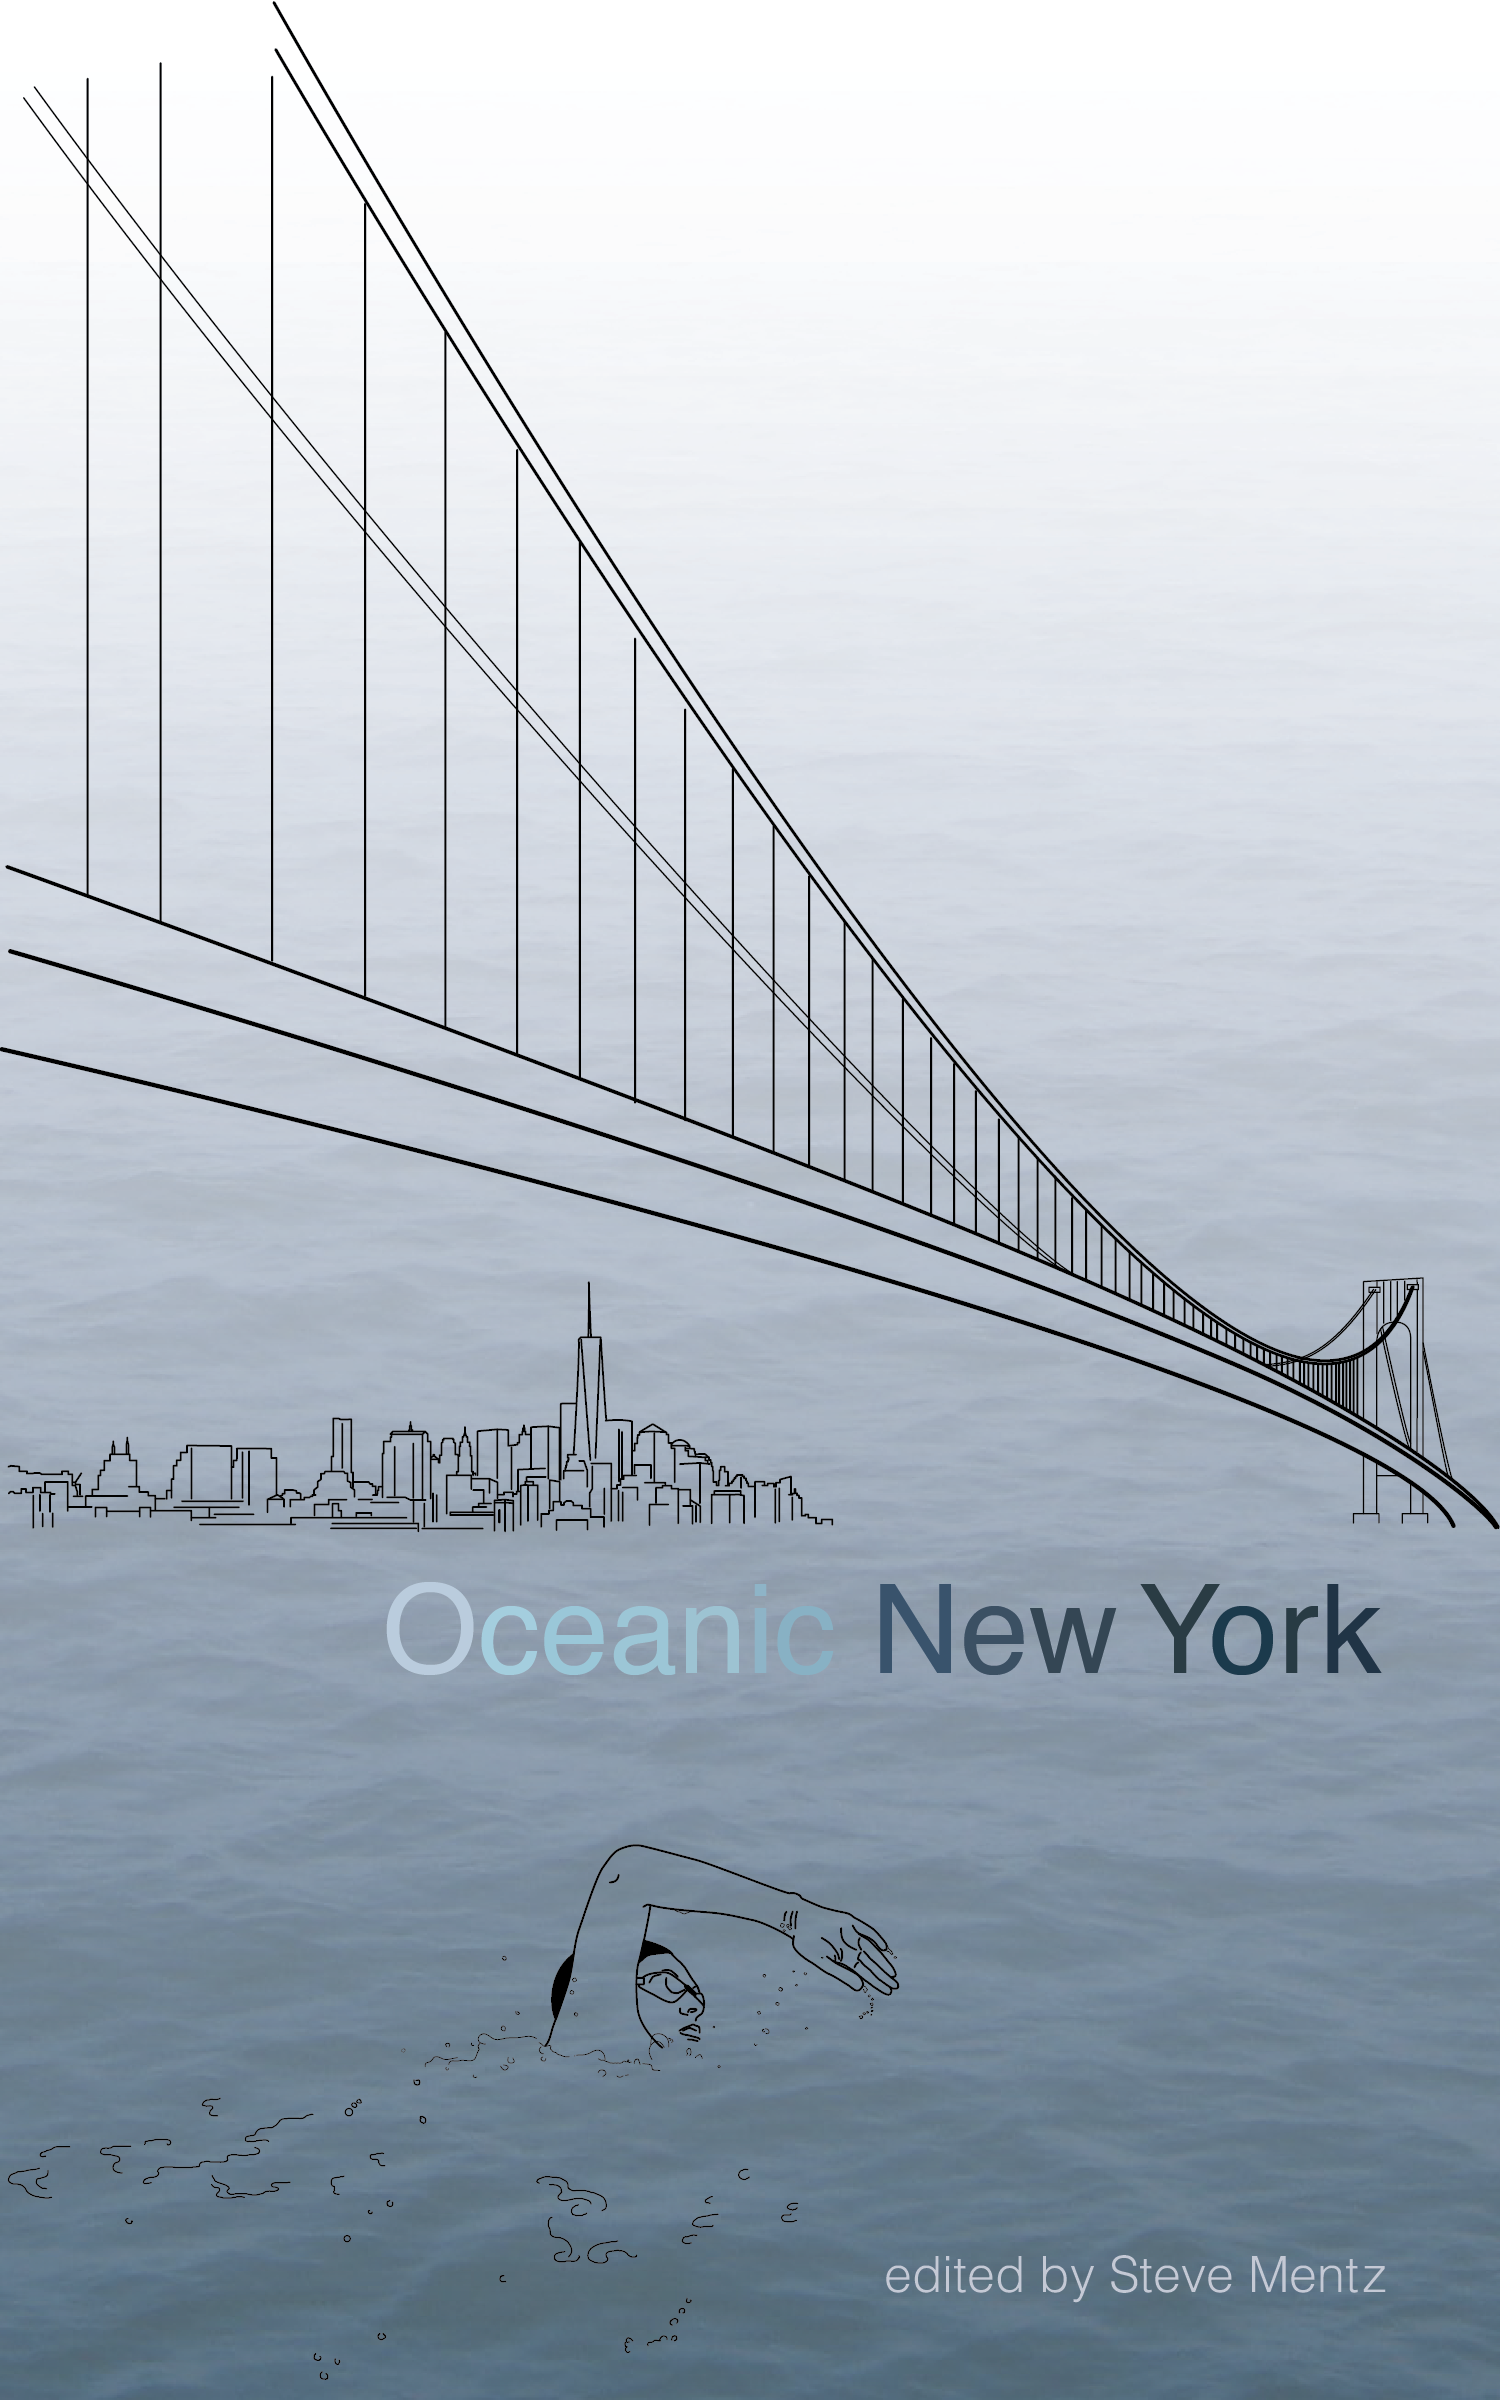 Oceanic New York (punctum books, 2015)